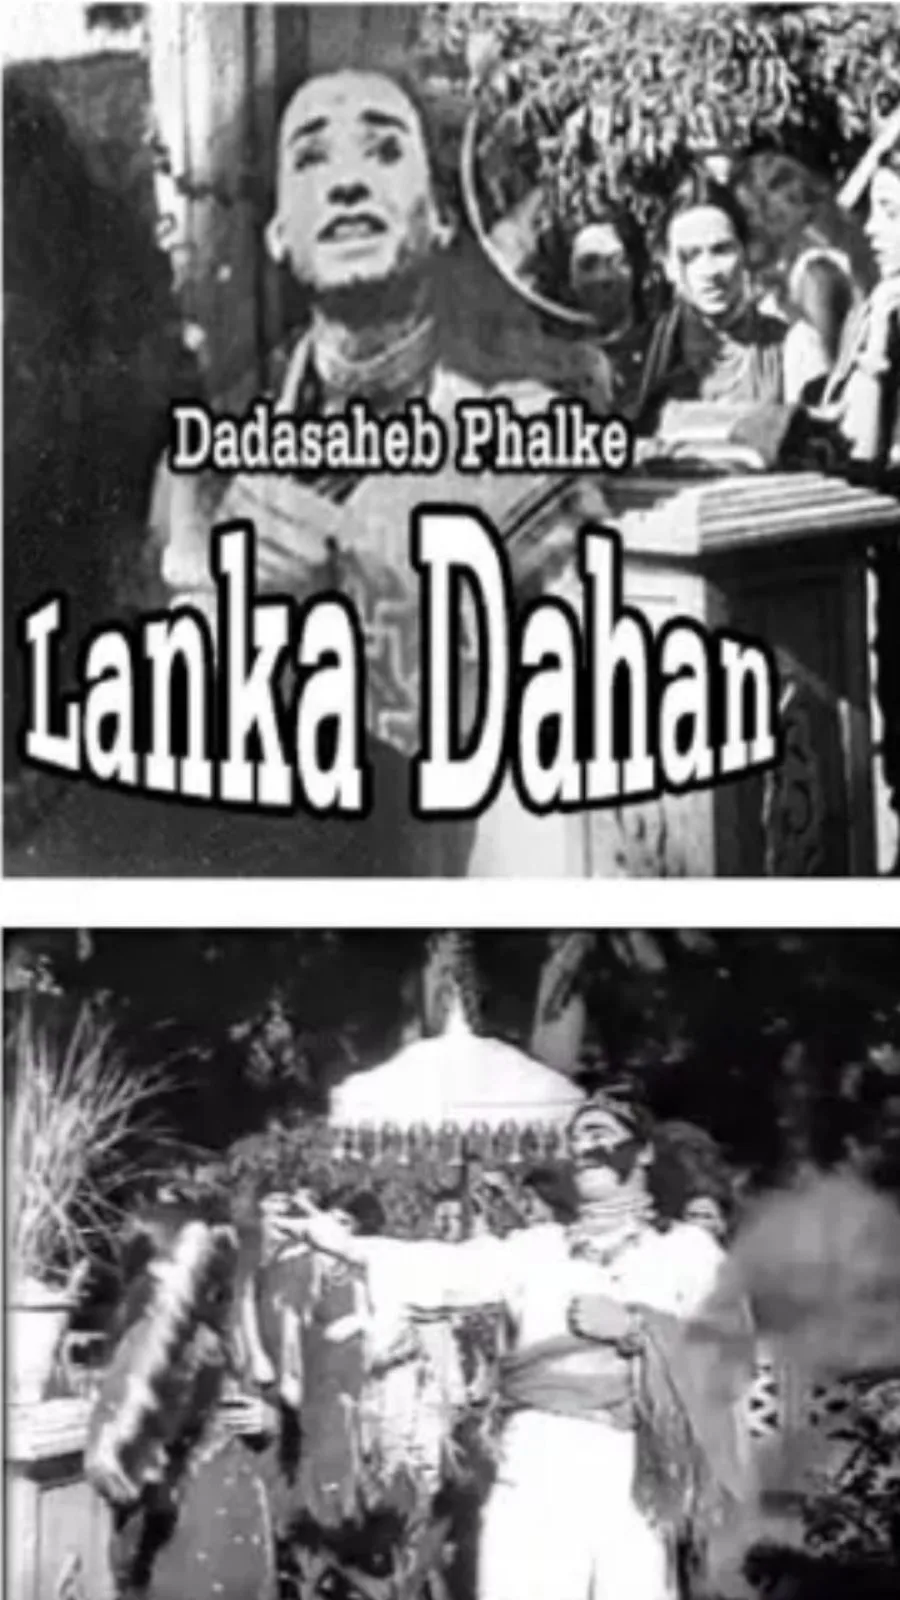 Lanka Dahan 1917